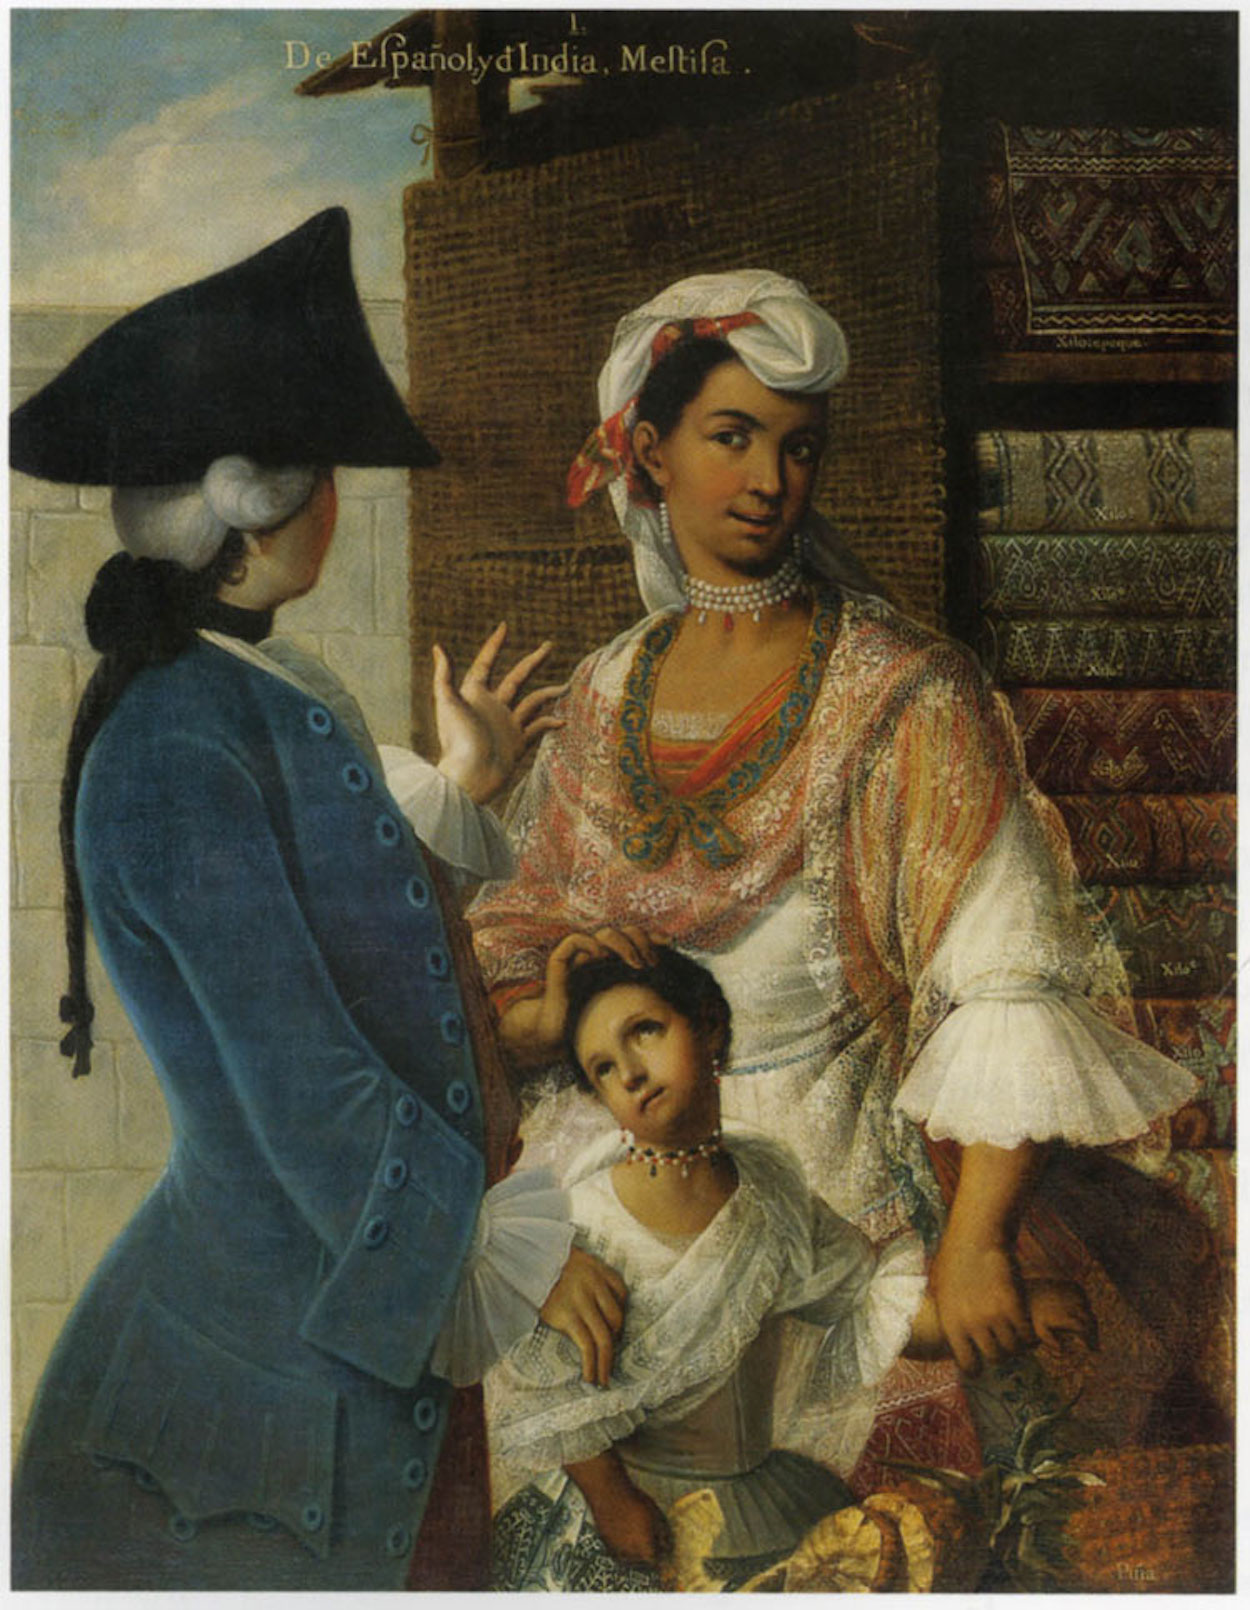 De Espagnõl e India, Mestiza by Miguel Mateo Maldonado y Cabrera - c. 1763 private collection